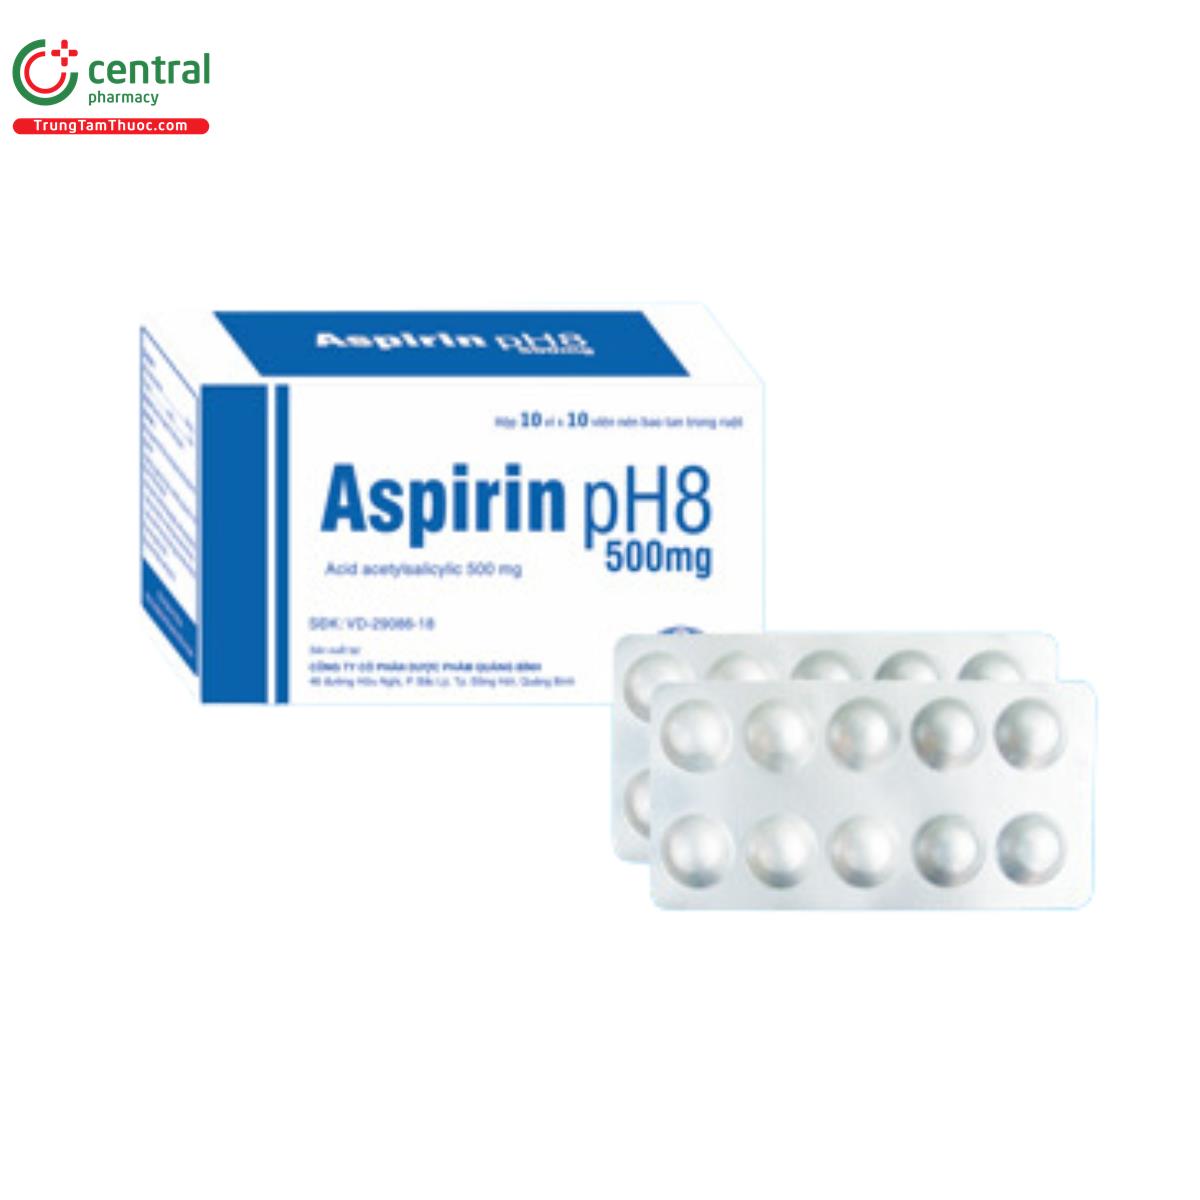 aspirin ph8 500mg quapharco 3 R7811